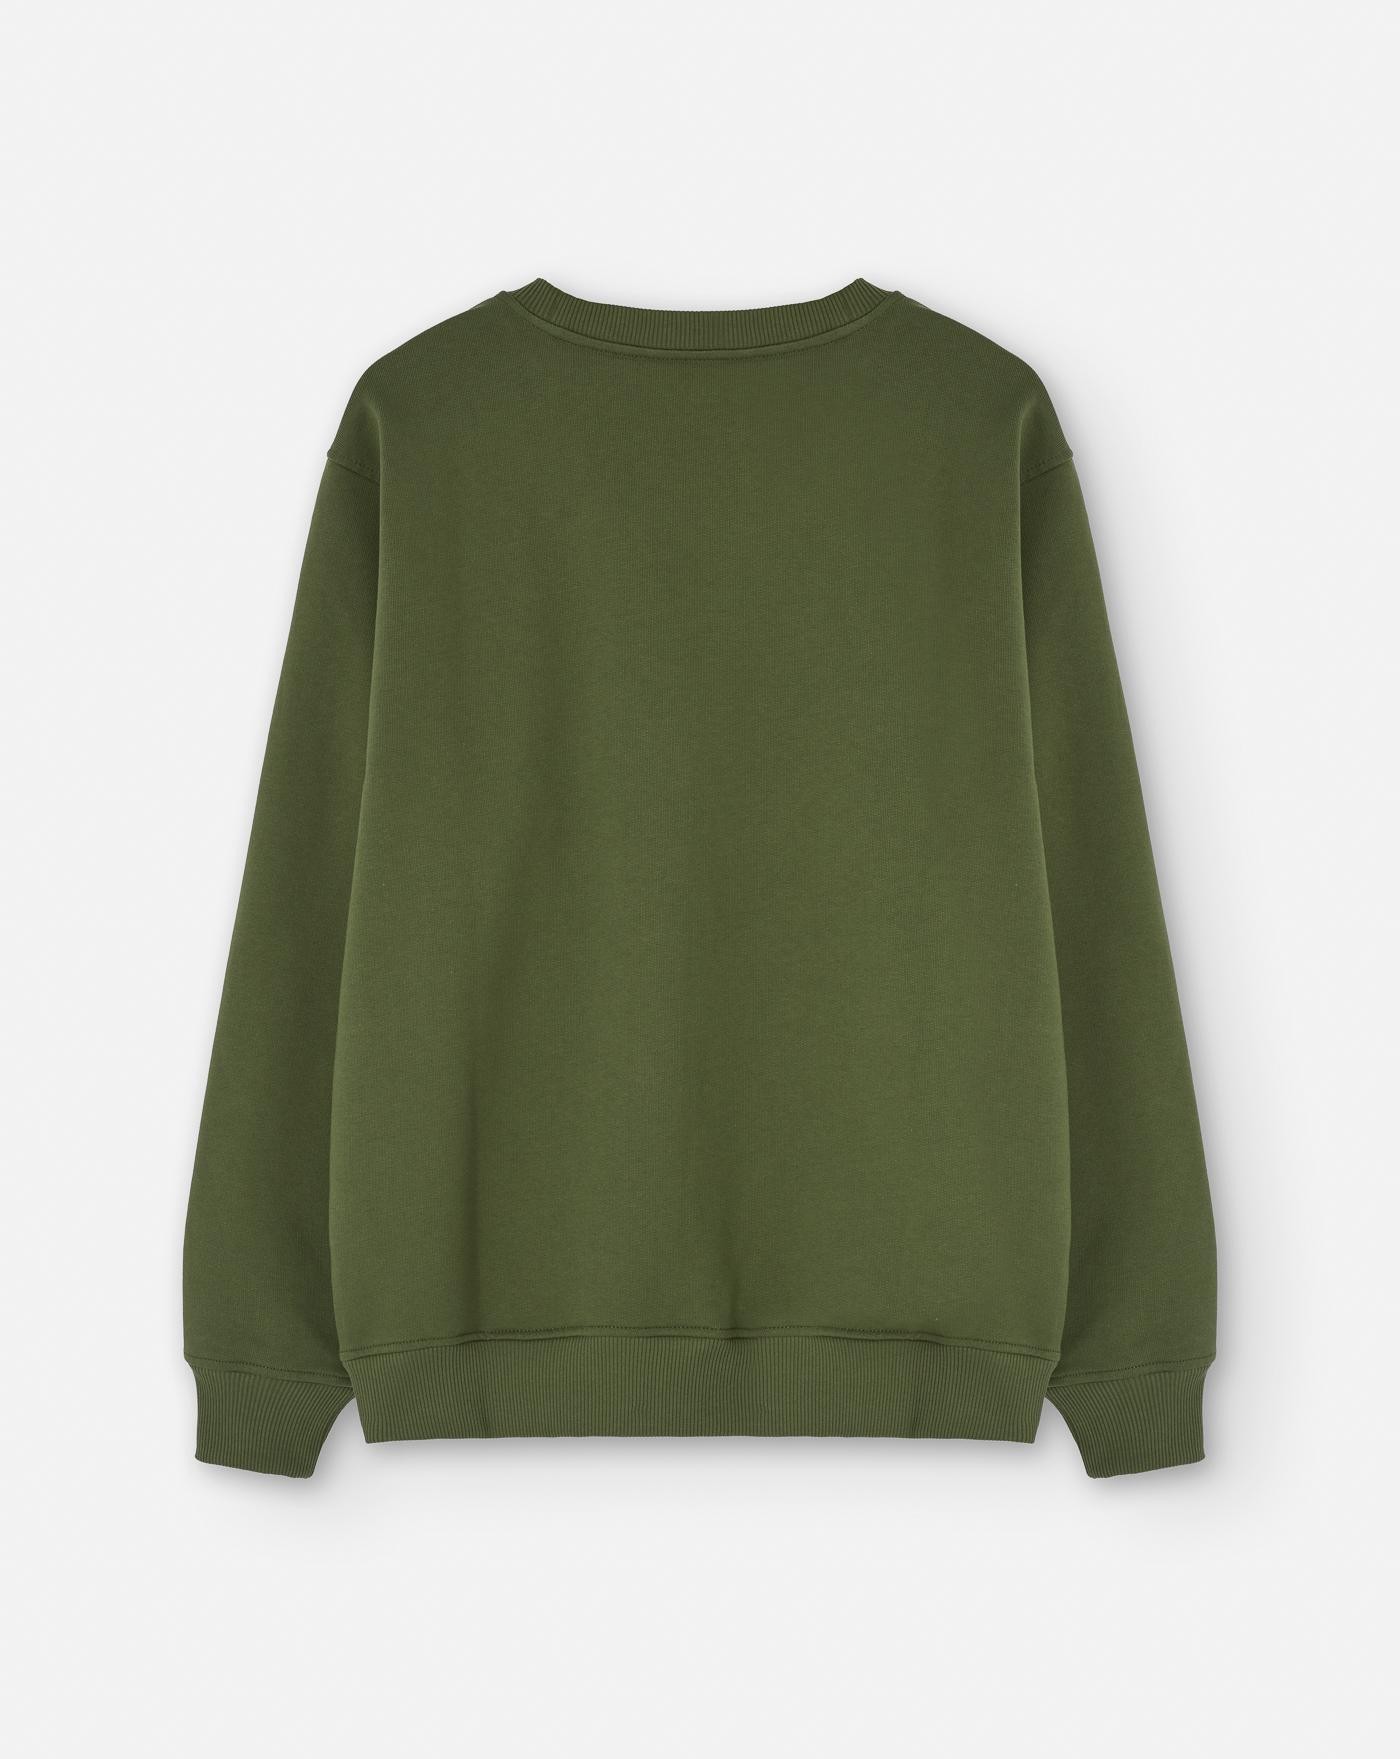 drole-de-monsieur-camiseta-le-classique-sweatshirt-green-verde-2